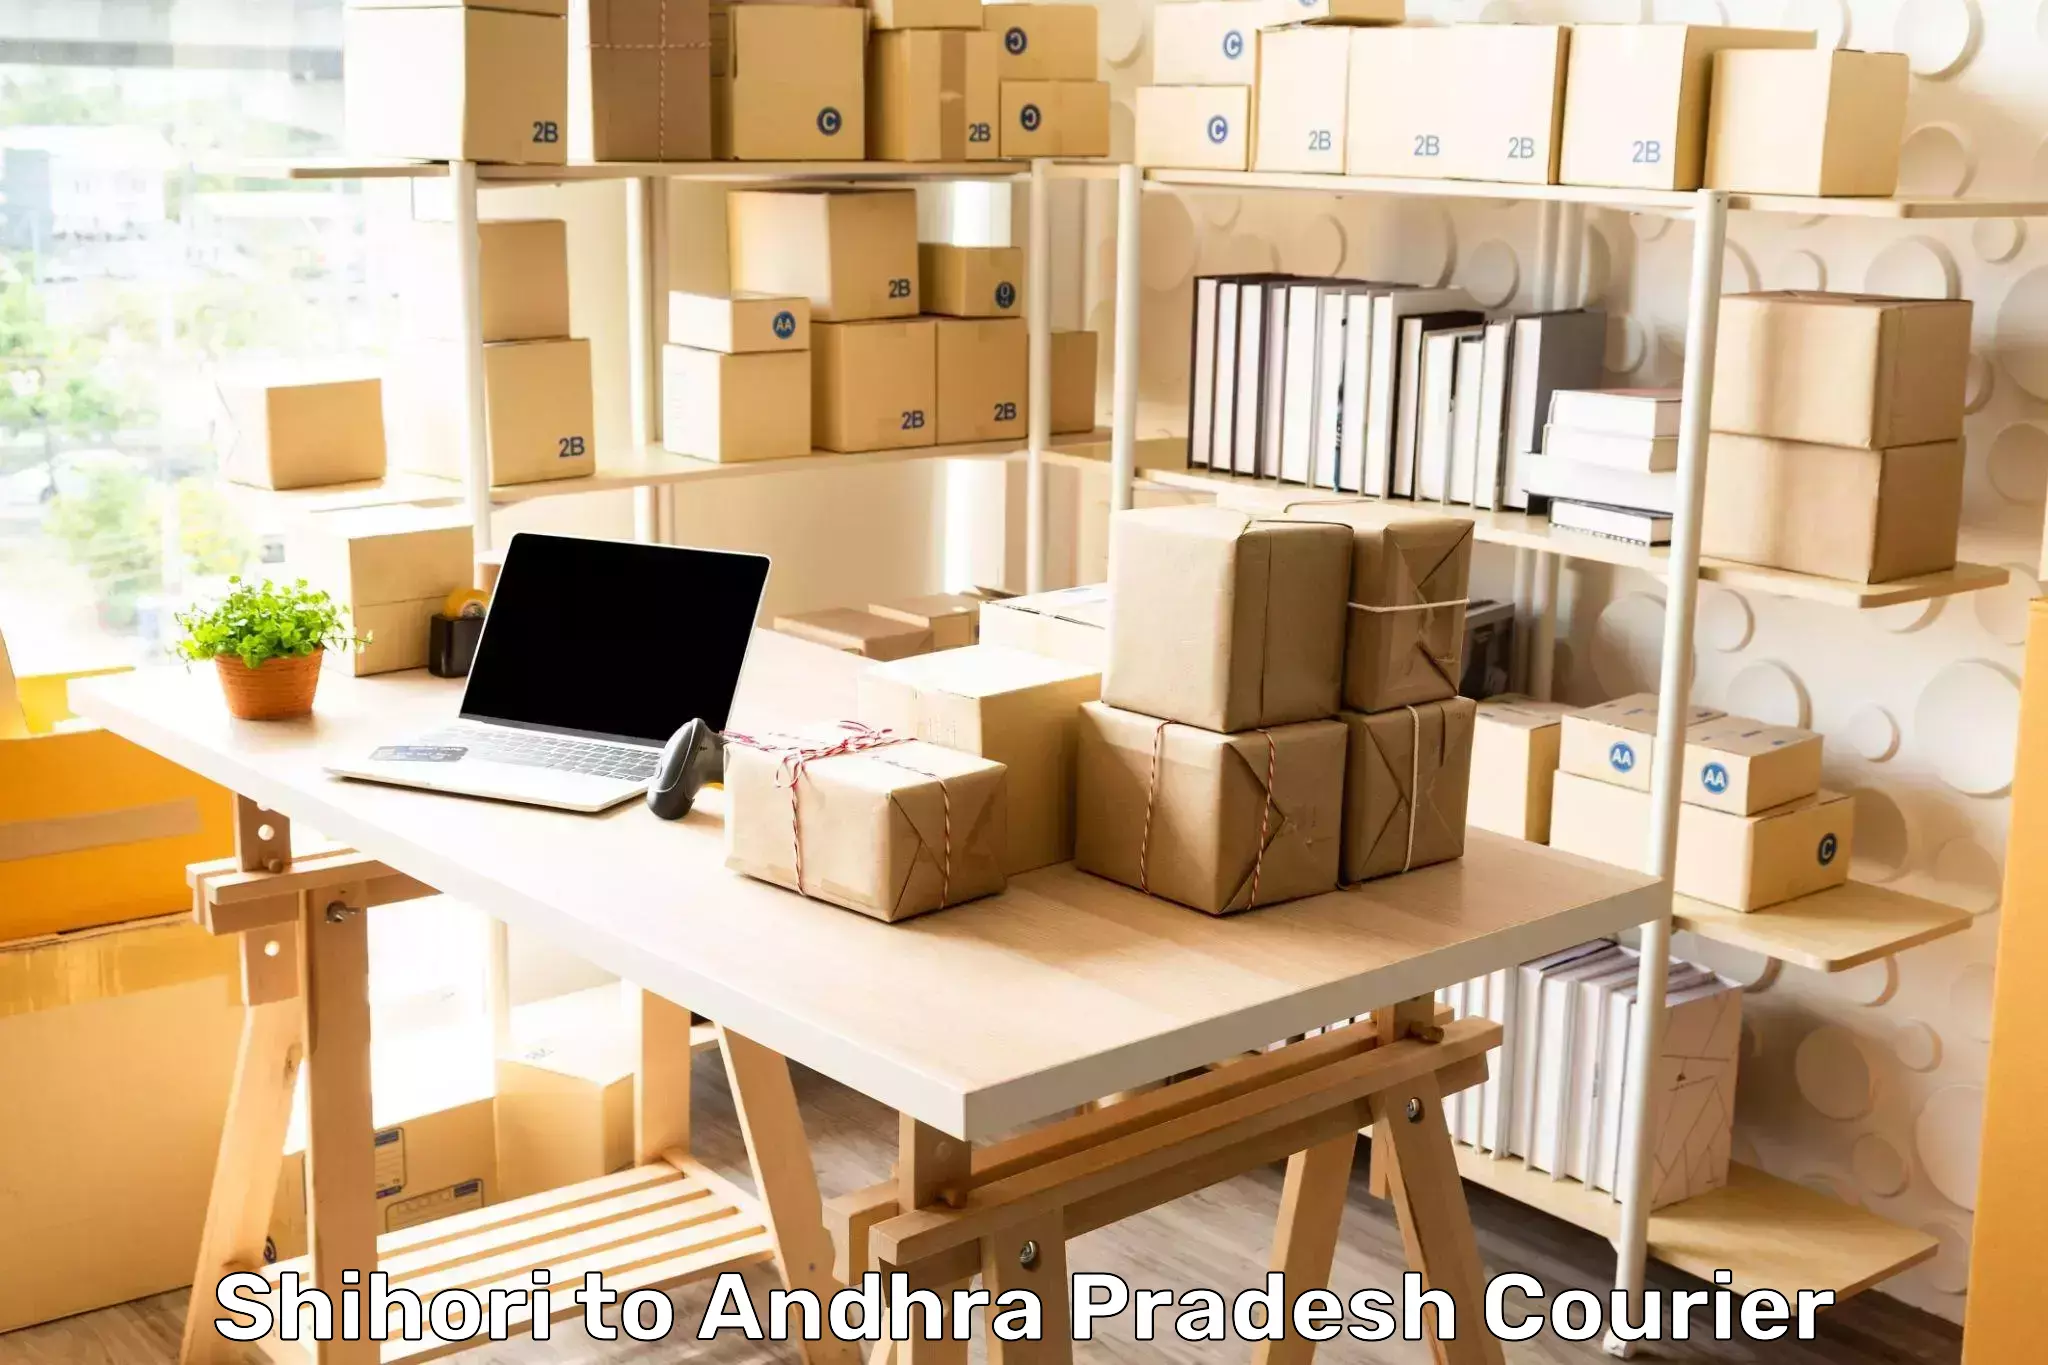 Comprehensive logistics solutions Shihori to Andhra Pradesh